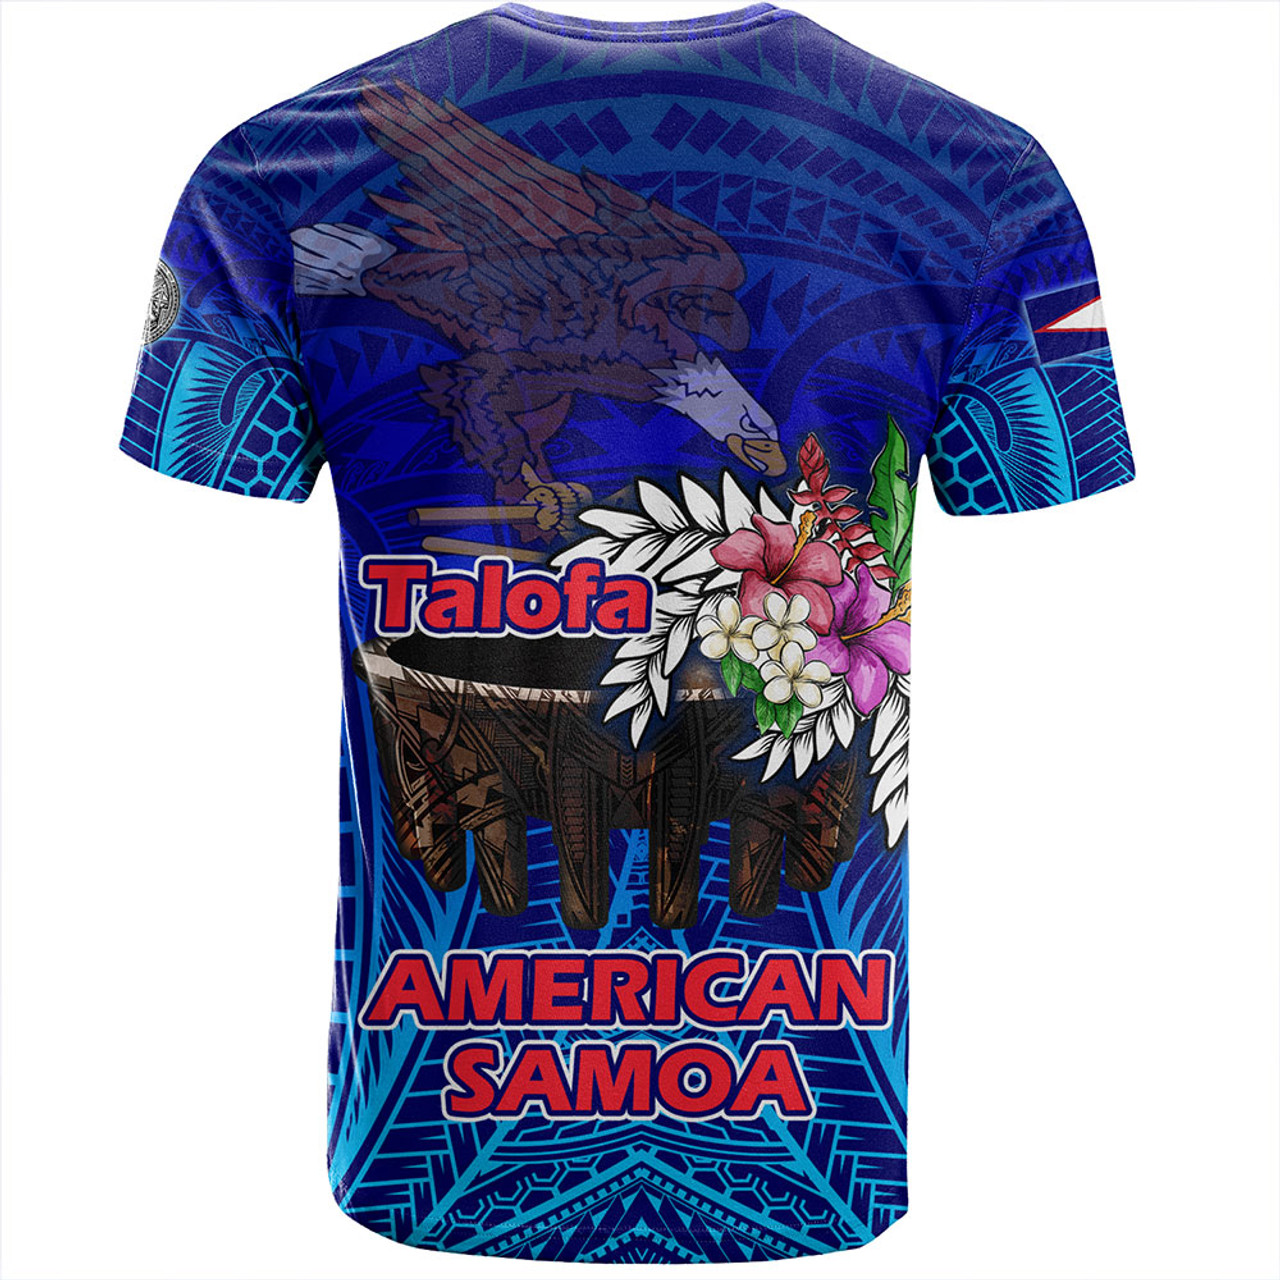 American Samoa T-Shirt Talofa American Samoa Kava Bowl